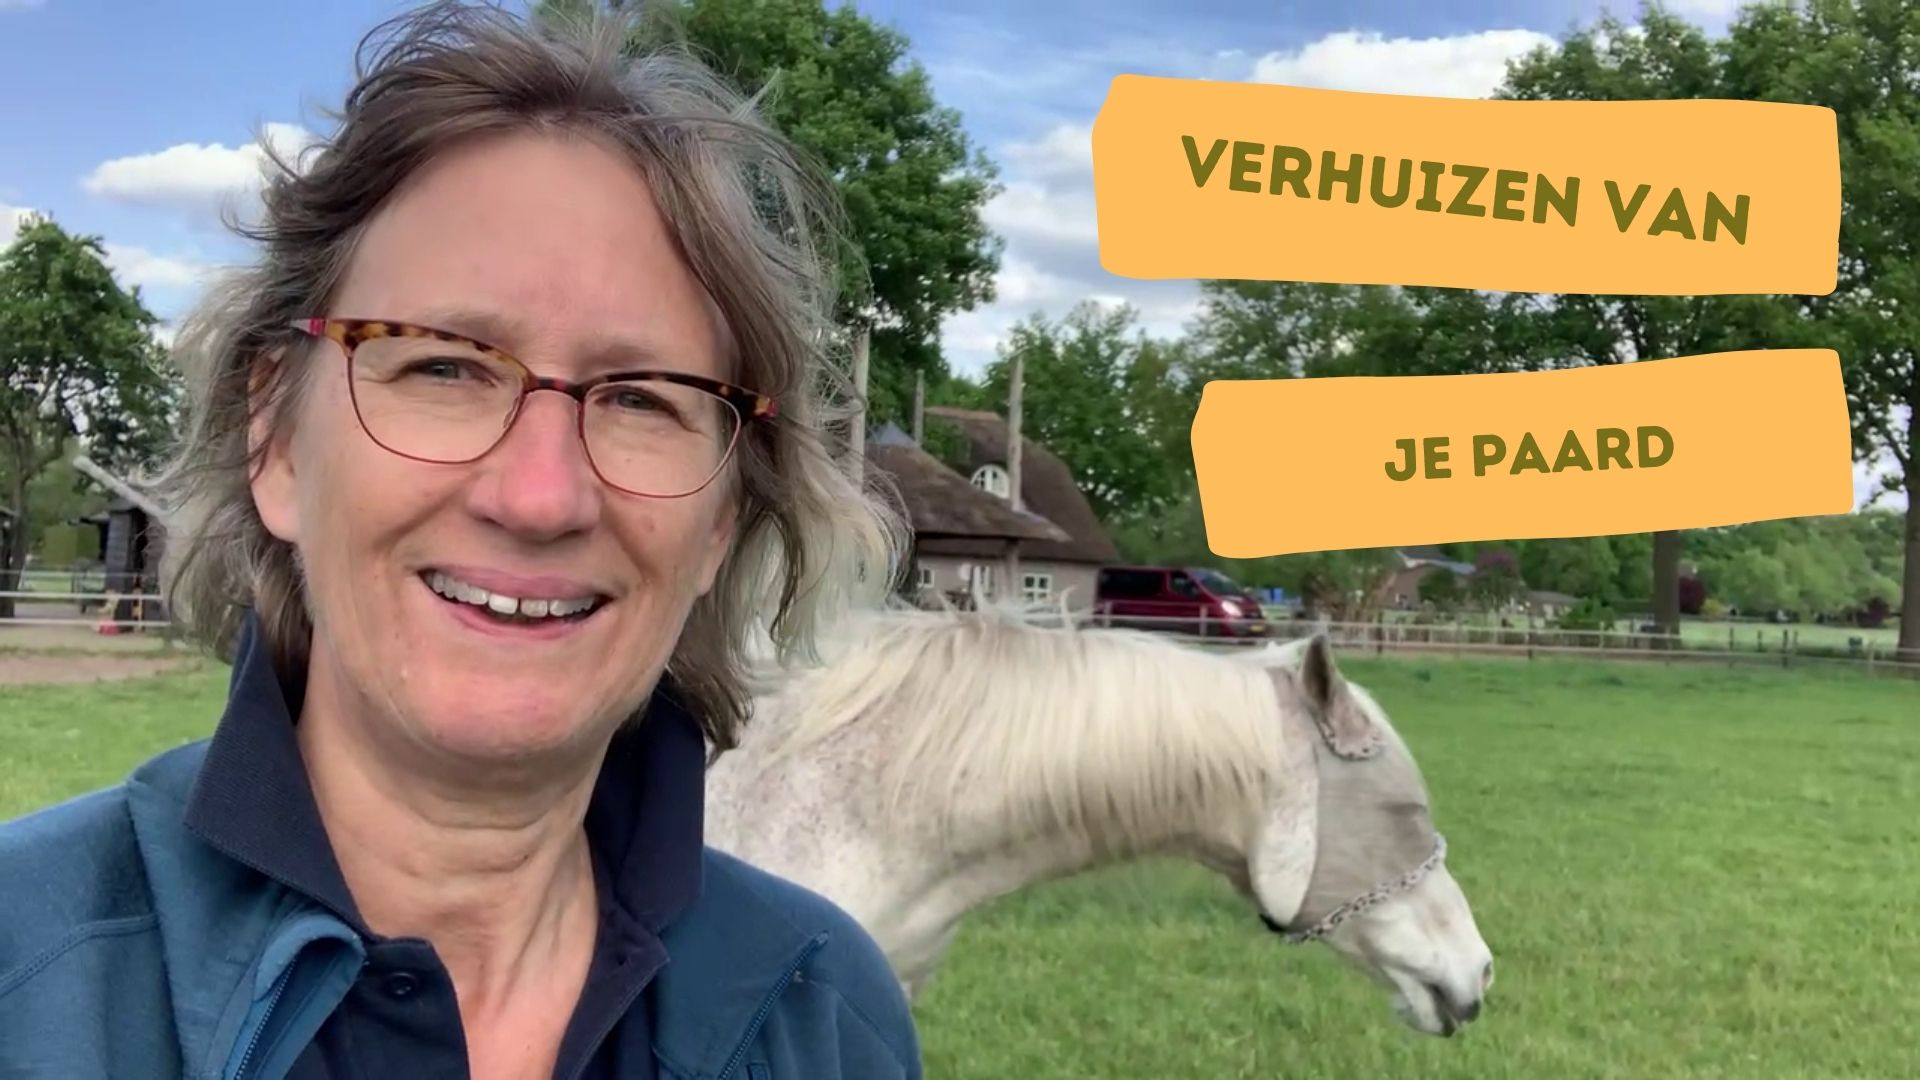 Video: Stressvrij verhuizen van je paard